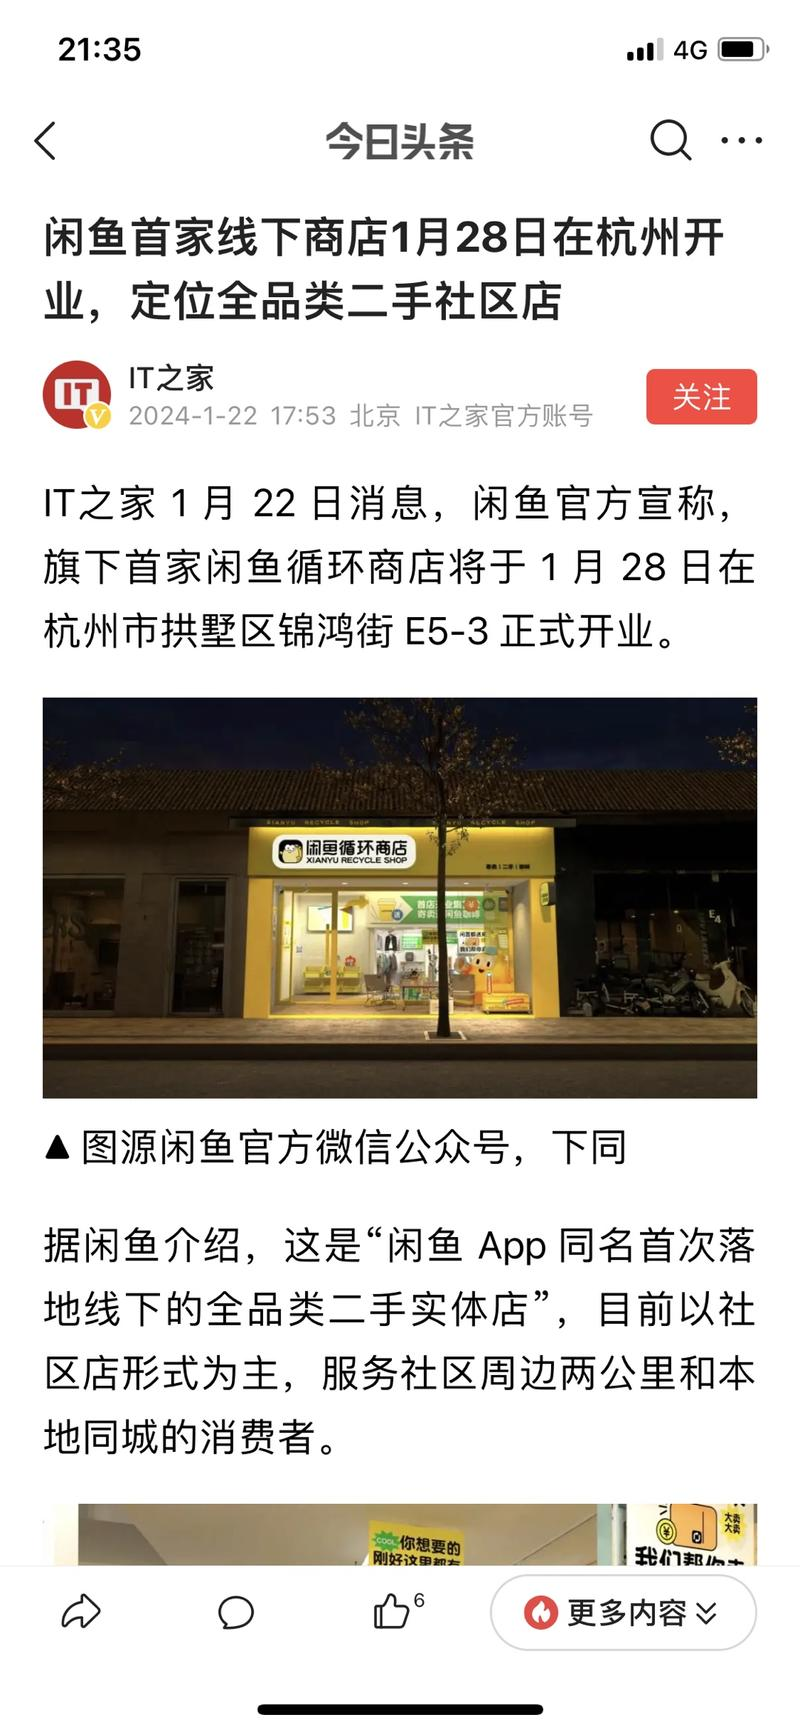 闲鱼在杭州开出了第一家线下实体商店，可以拿去实体店进行寄卖。（需符合闲鱼规定的商品）-鸭先知论坛-鸭行天下创业社